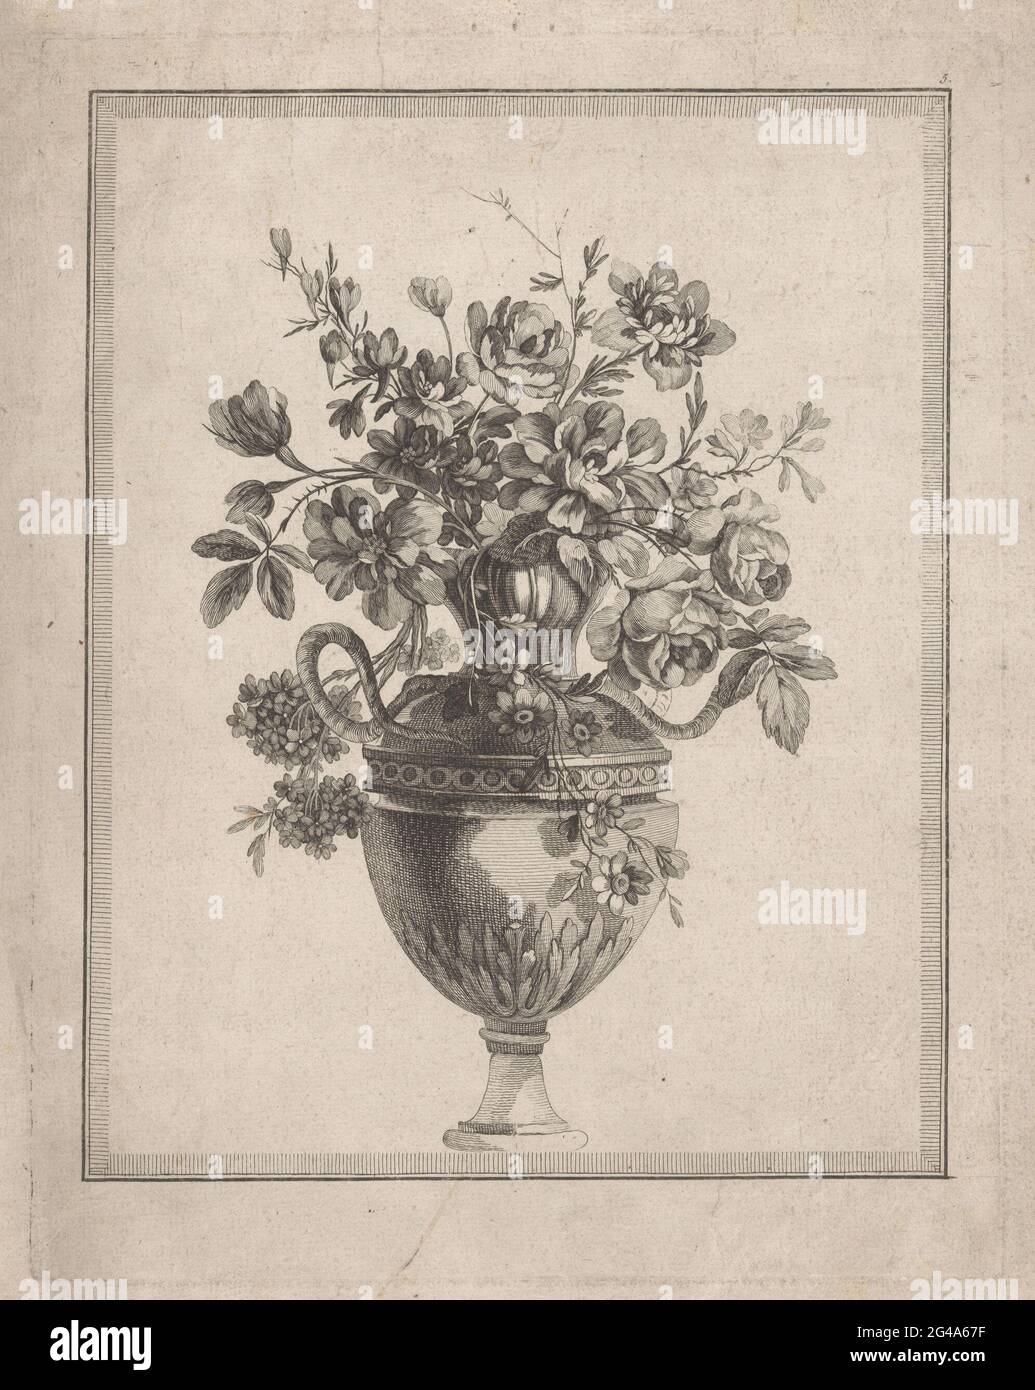 Blumen in Vase mit Schlangen; 10. Cahier Cayé de Fleurs et Vases. Blumen in  einer verzierten Vase mit Schlangen Stockfotografie - Alamy